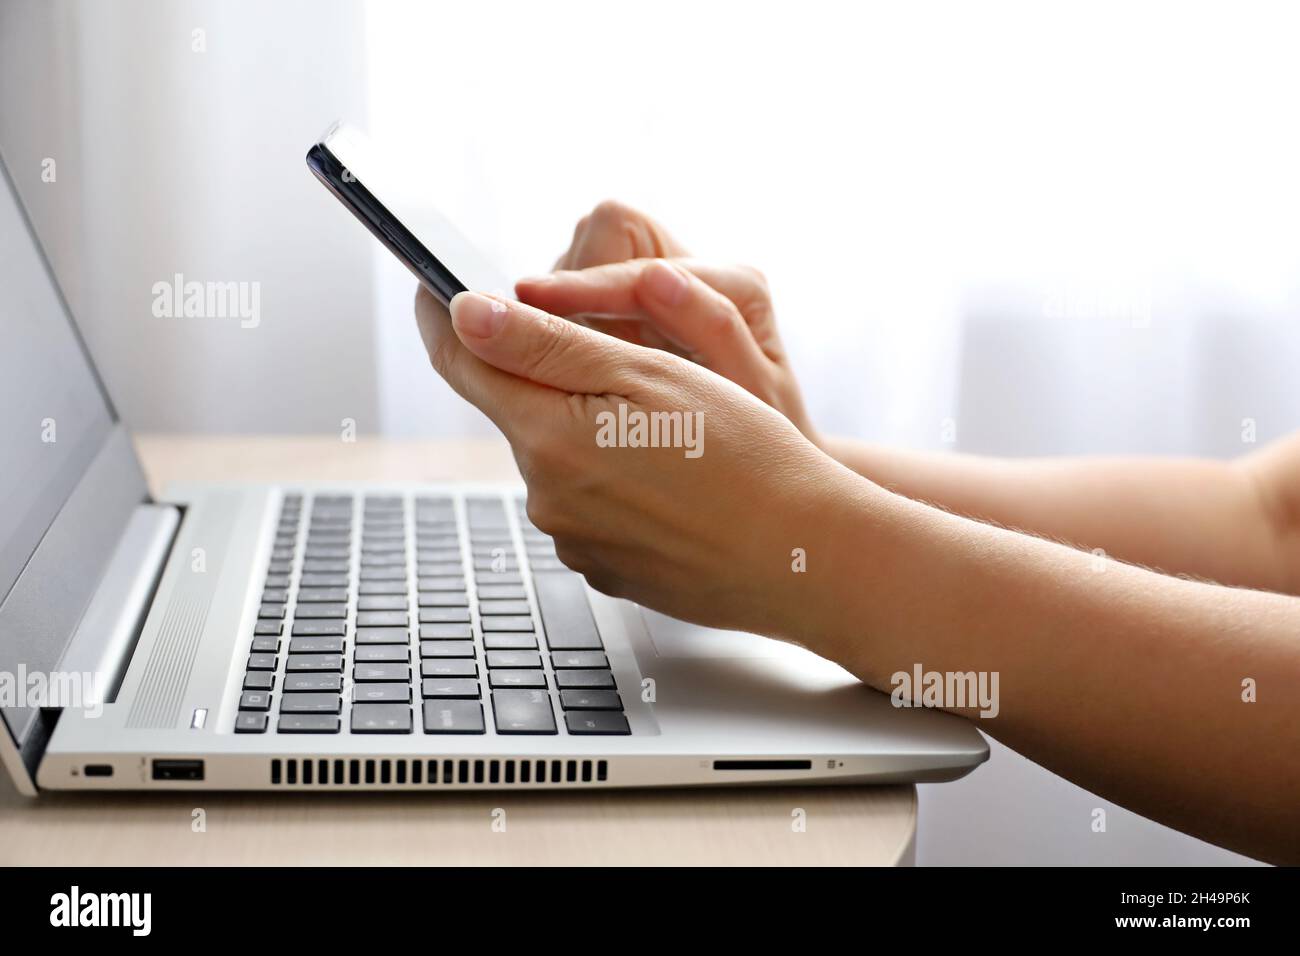 Femme avec un smartphone assis au clavier de l'ordinateur portable près de la fenêtre. Concept de communication en ligne, travail au bureau ou à domicile et paiement Banque D'Images